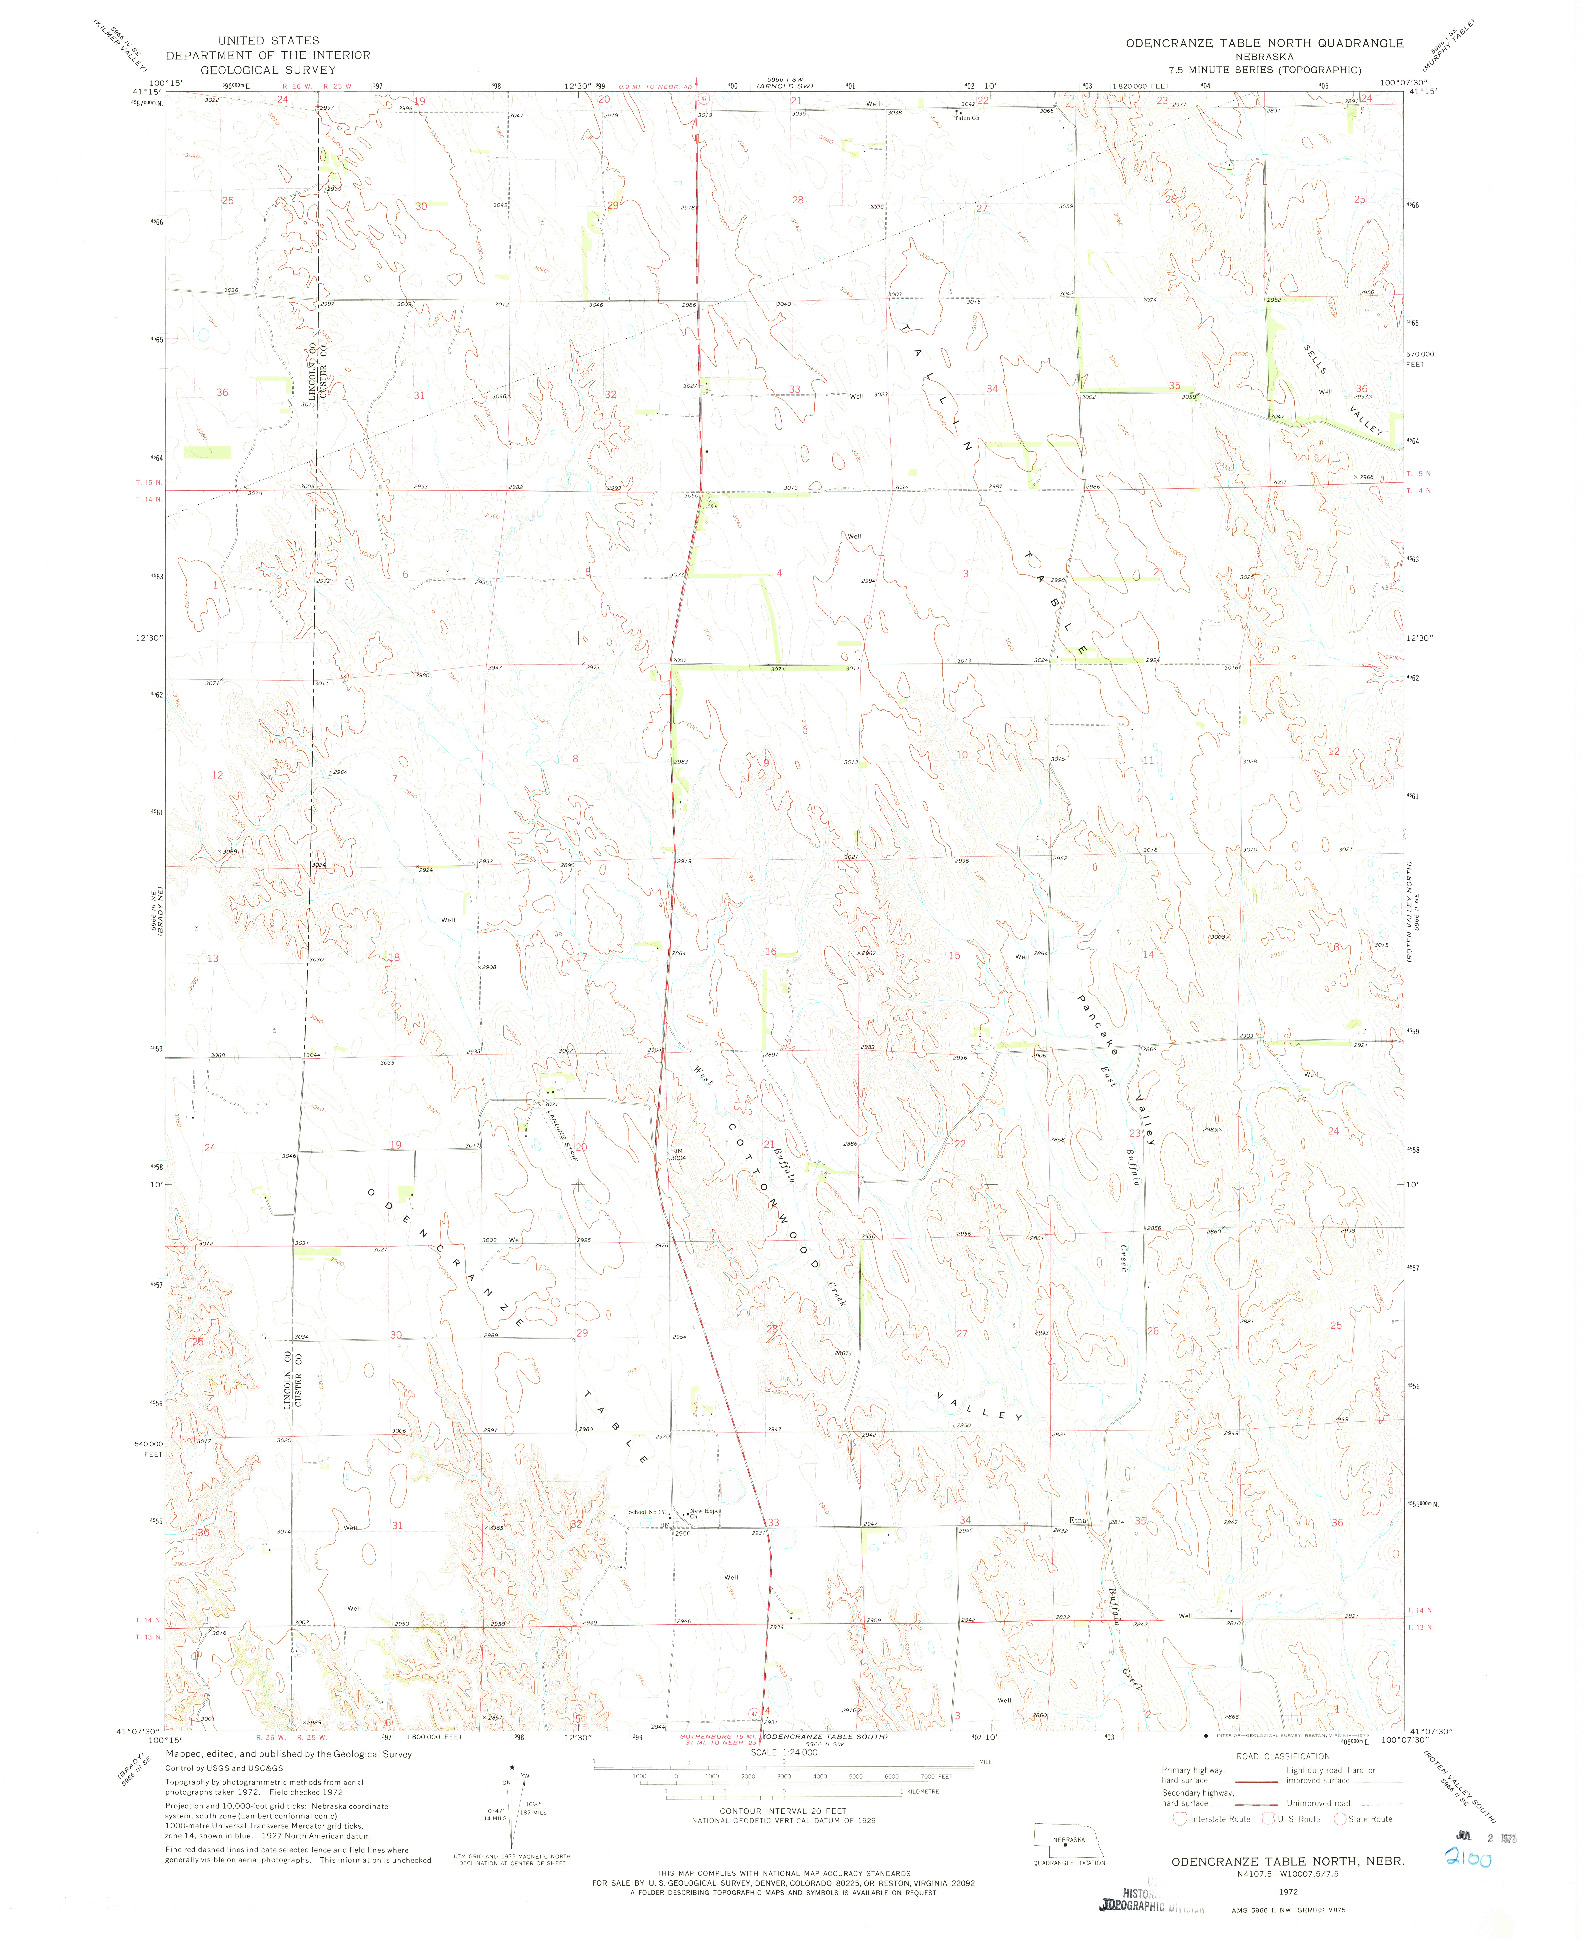 USGS 1:24000-SCALE QUADRANGLE FOR ODENCRANZE TABLE NORTH, NE 1972